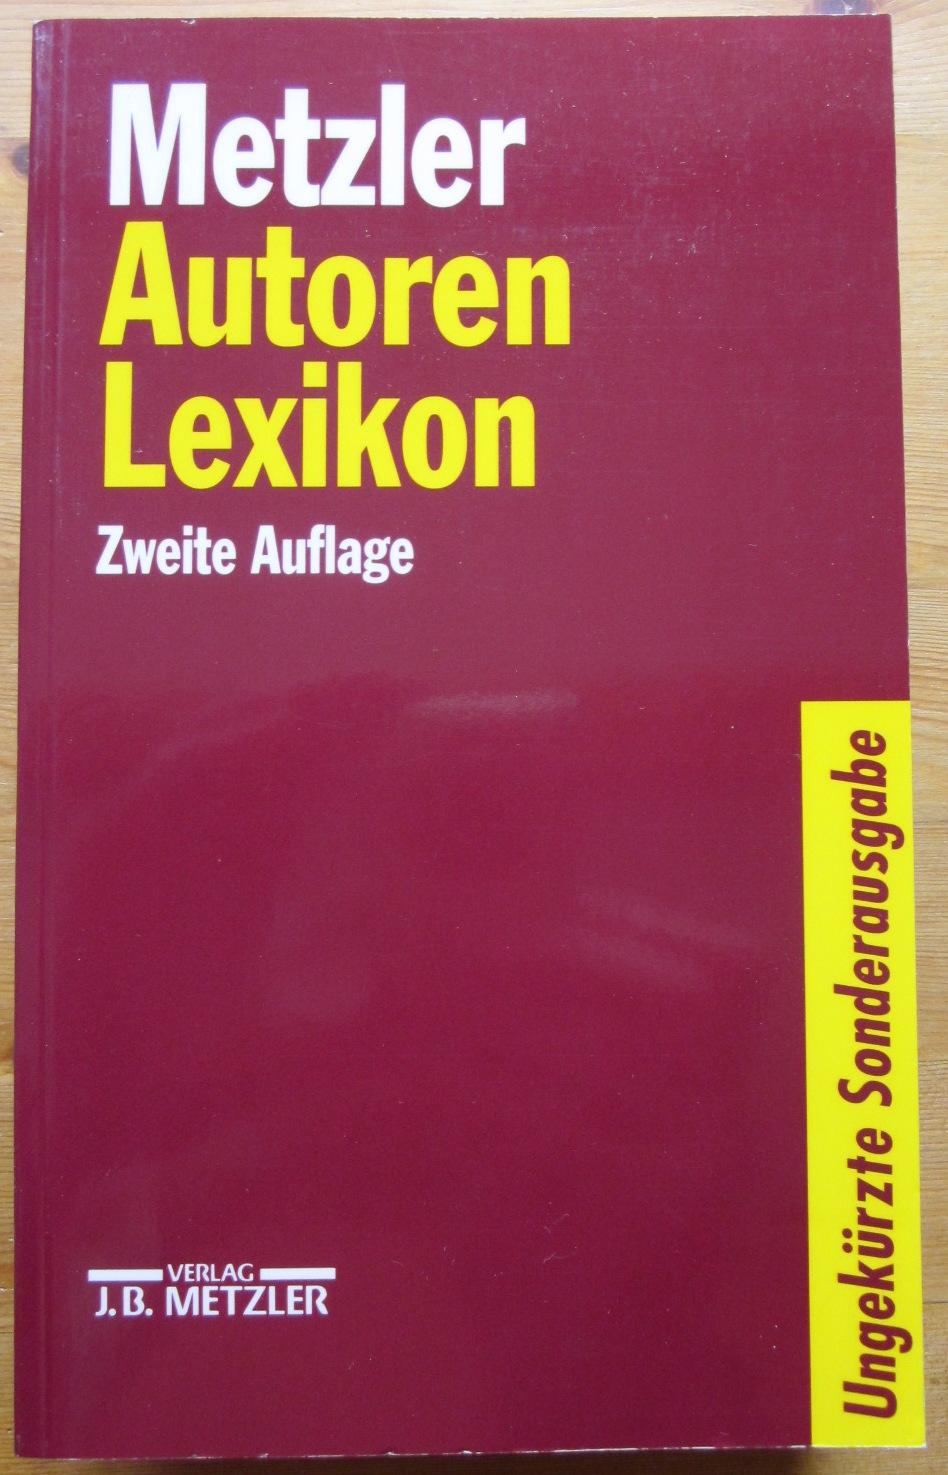 Metzler Autoren Lexikon. Deutschsprachige Dichter und Schriftsteller vom Mittelalter bis zur Gegenwart. - Lutz, Bernd (Herausgeber)